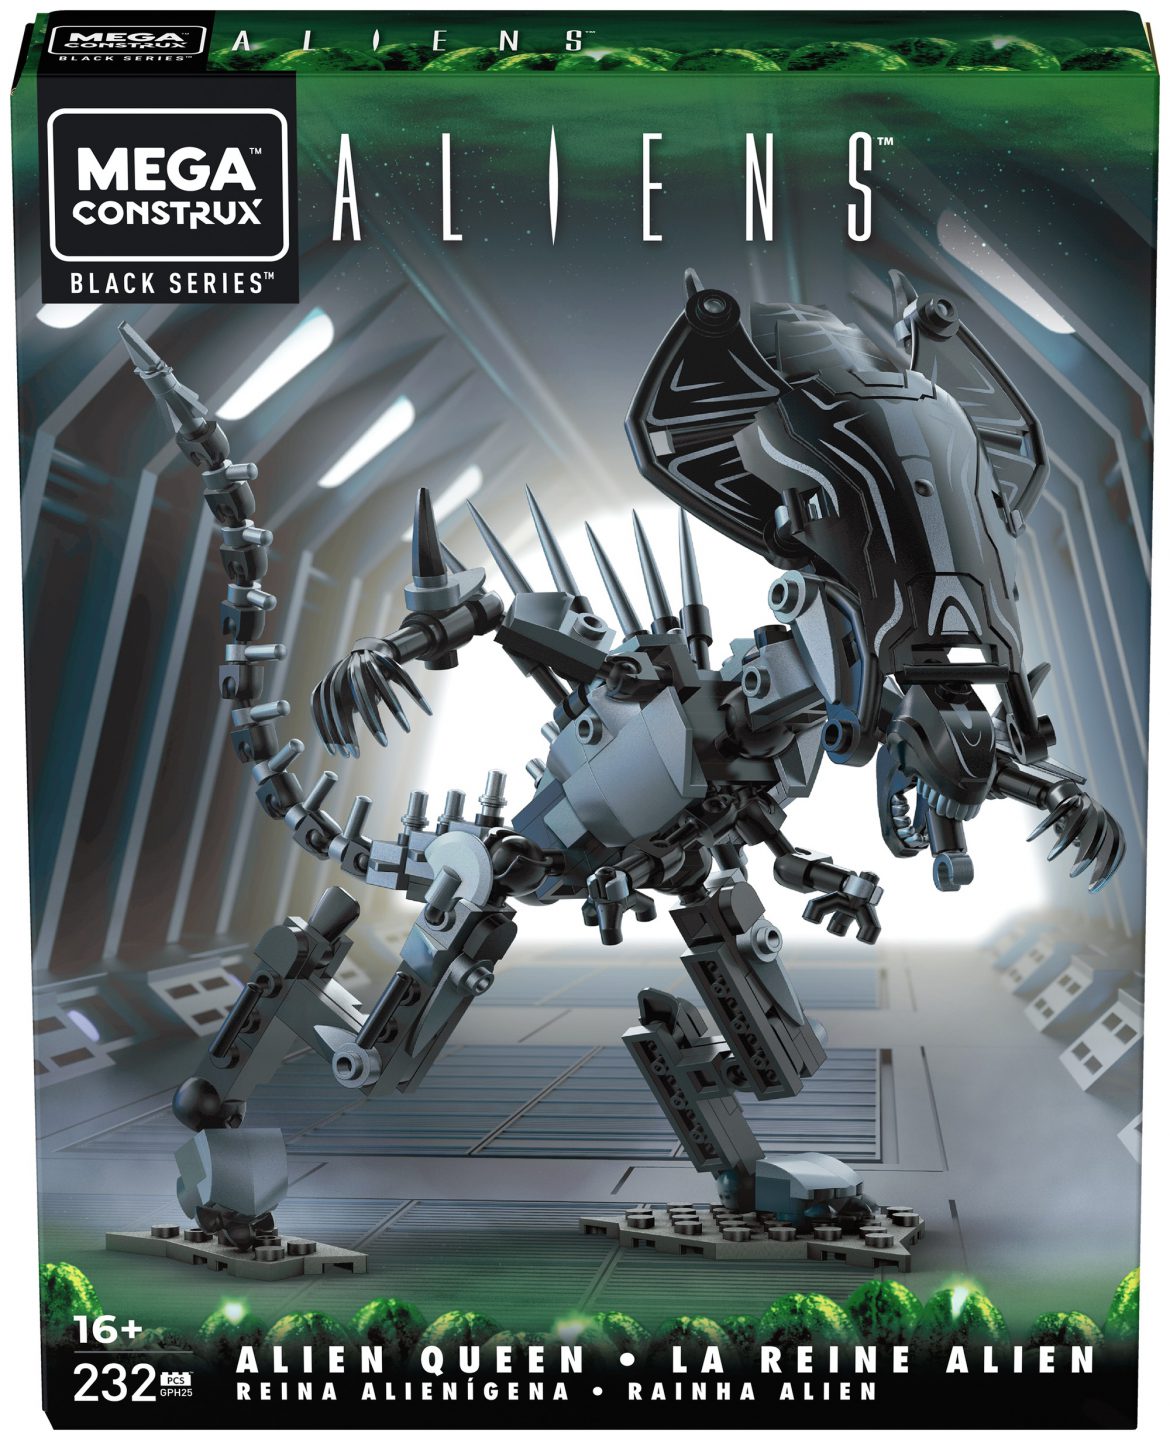 Mega Construx Black Series Aliens – Alien Queen Now Available